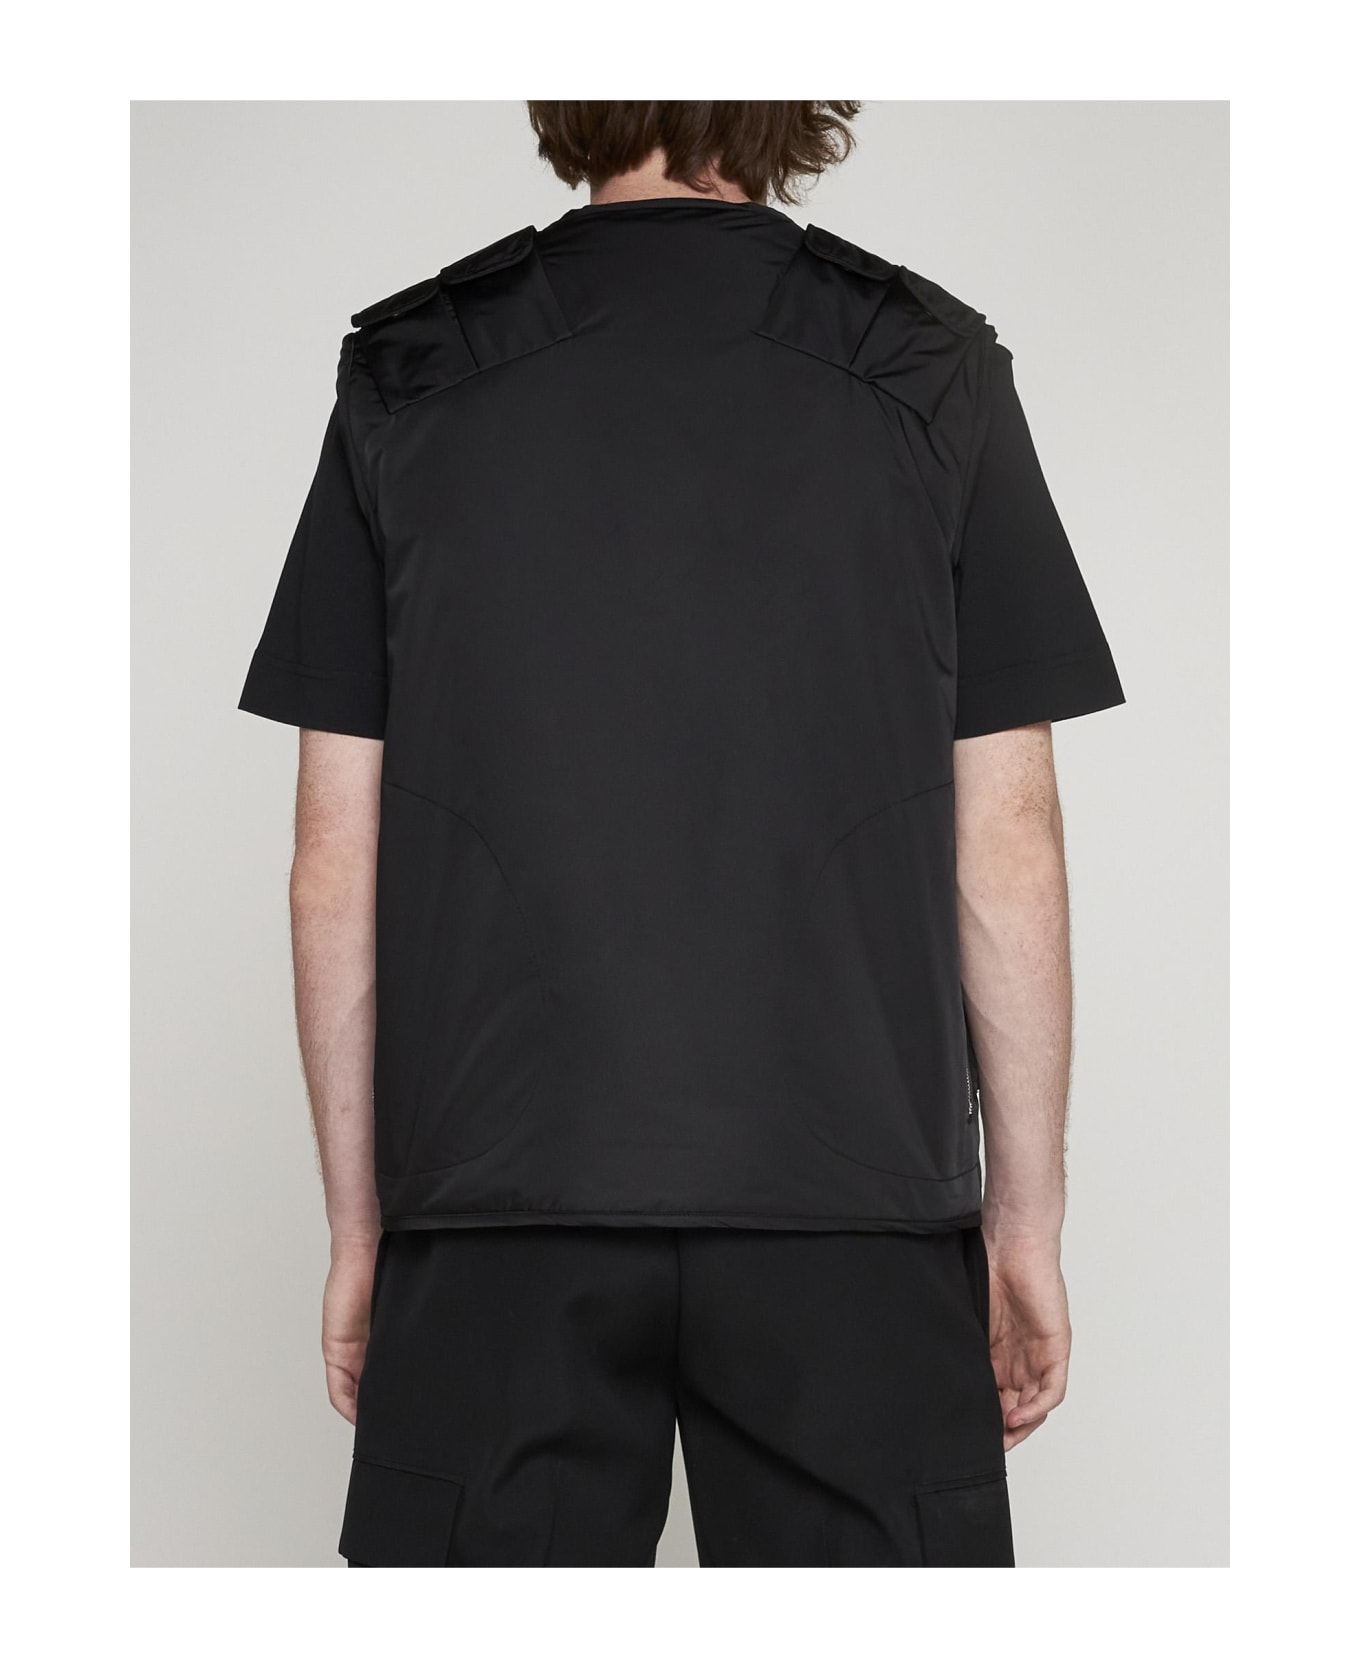 Givenchy Multi-pockets Nylon Vest - NERO